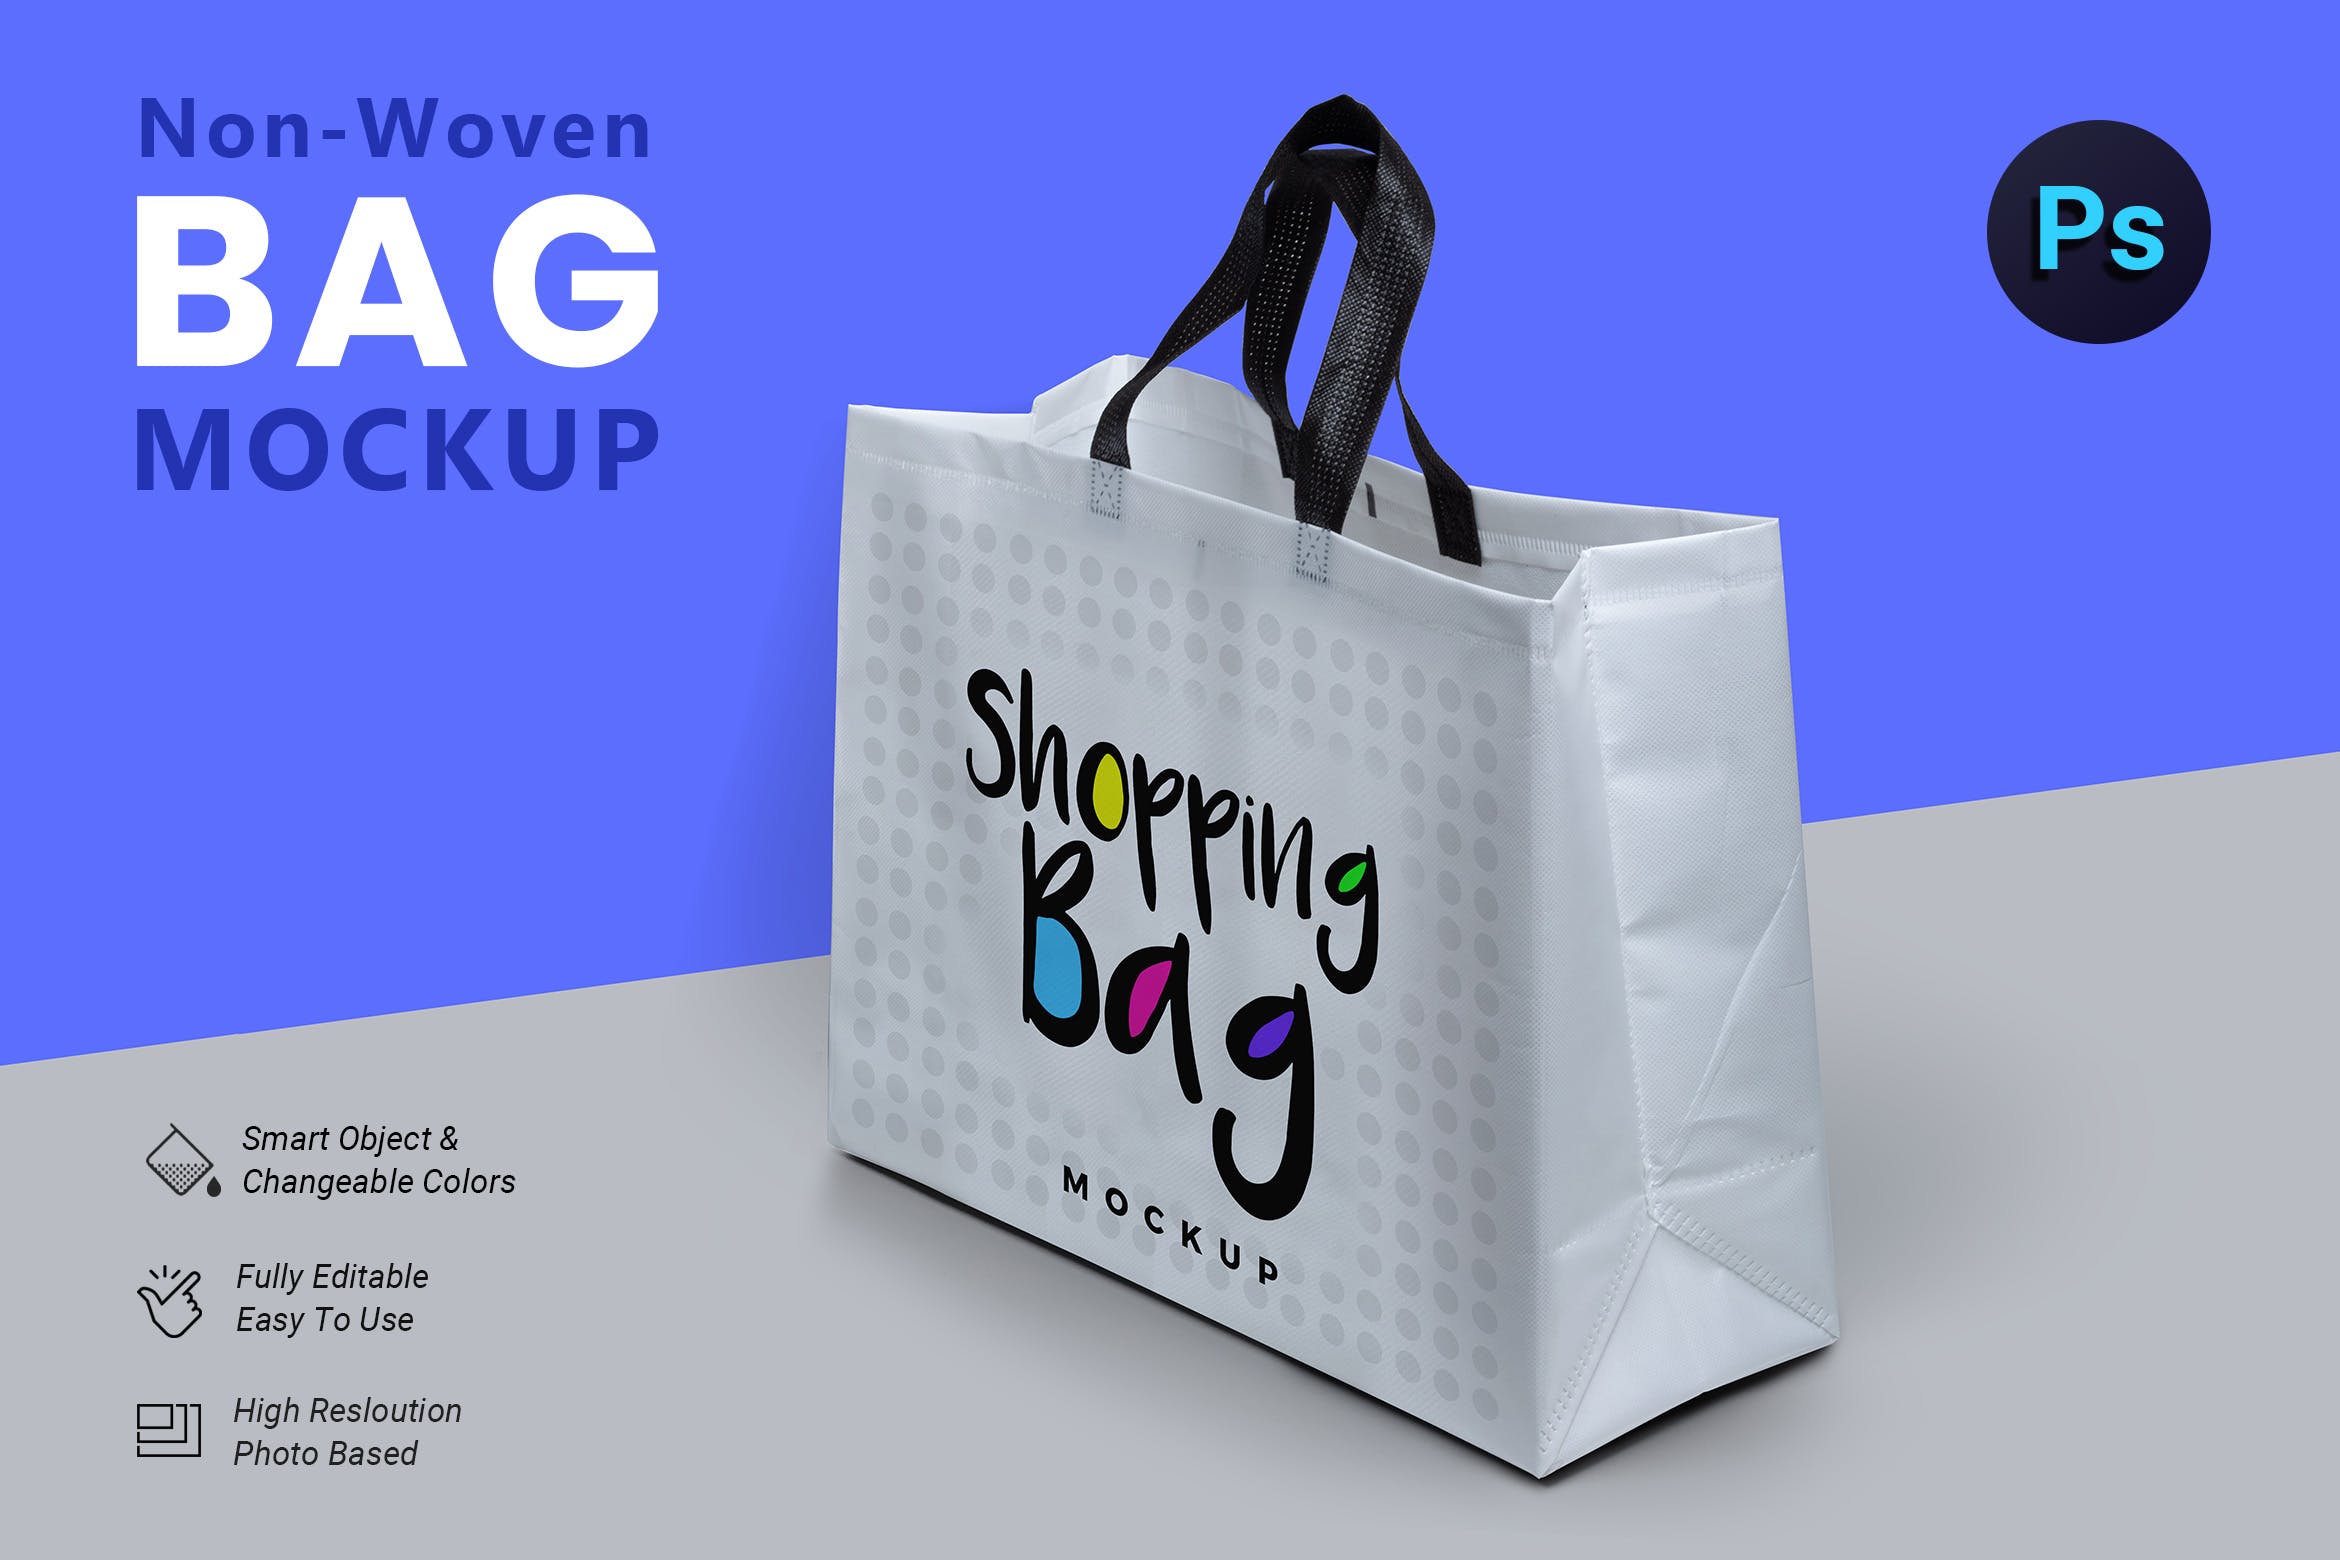 无纺布购物袋外观设计图非凡图库精选 Non Woven Bag Mockup插图